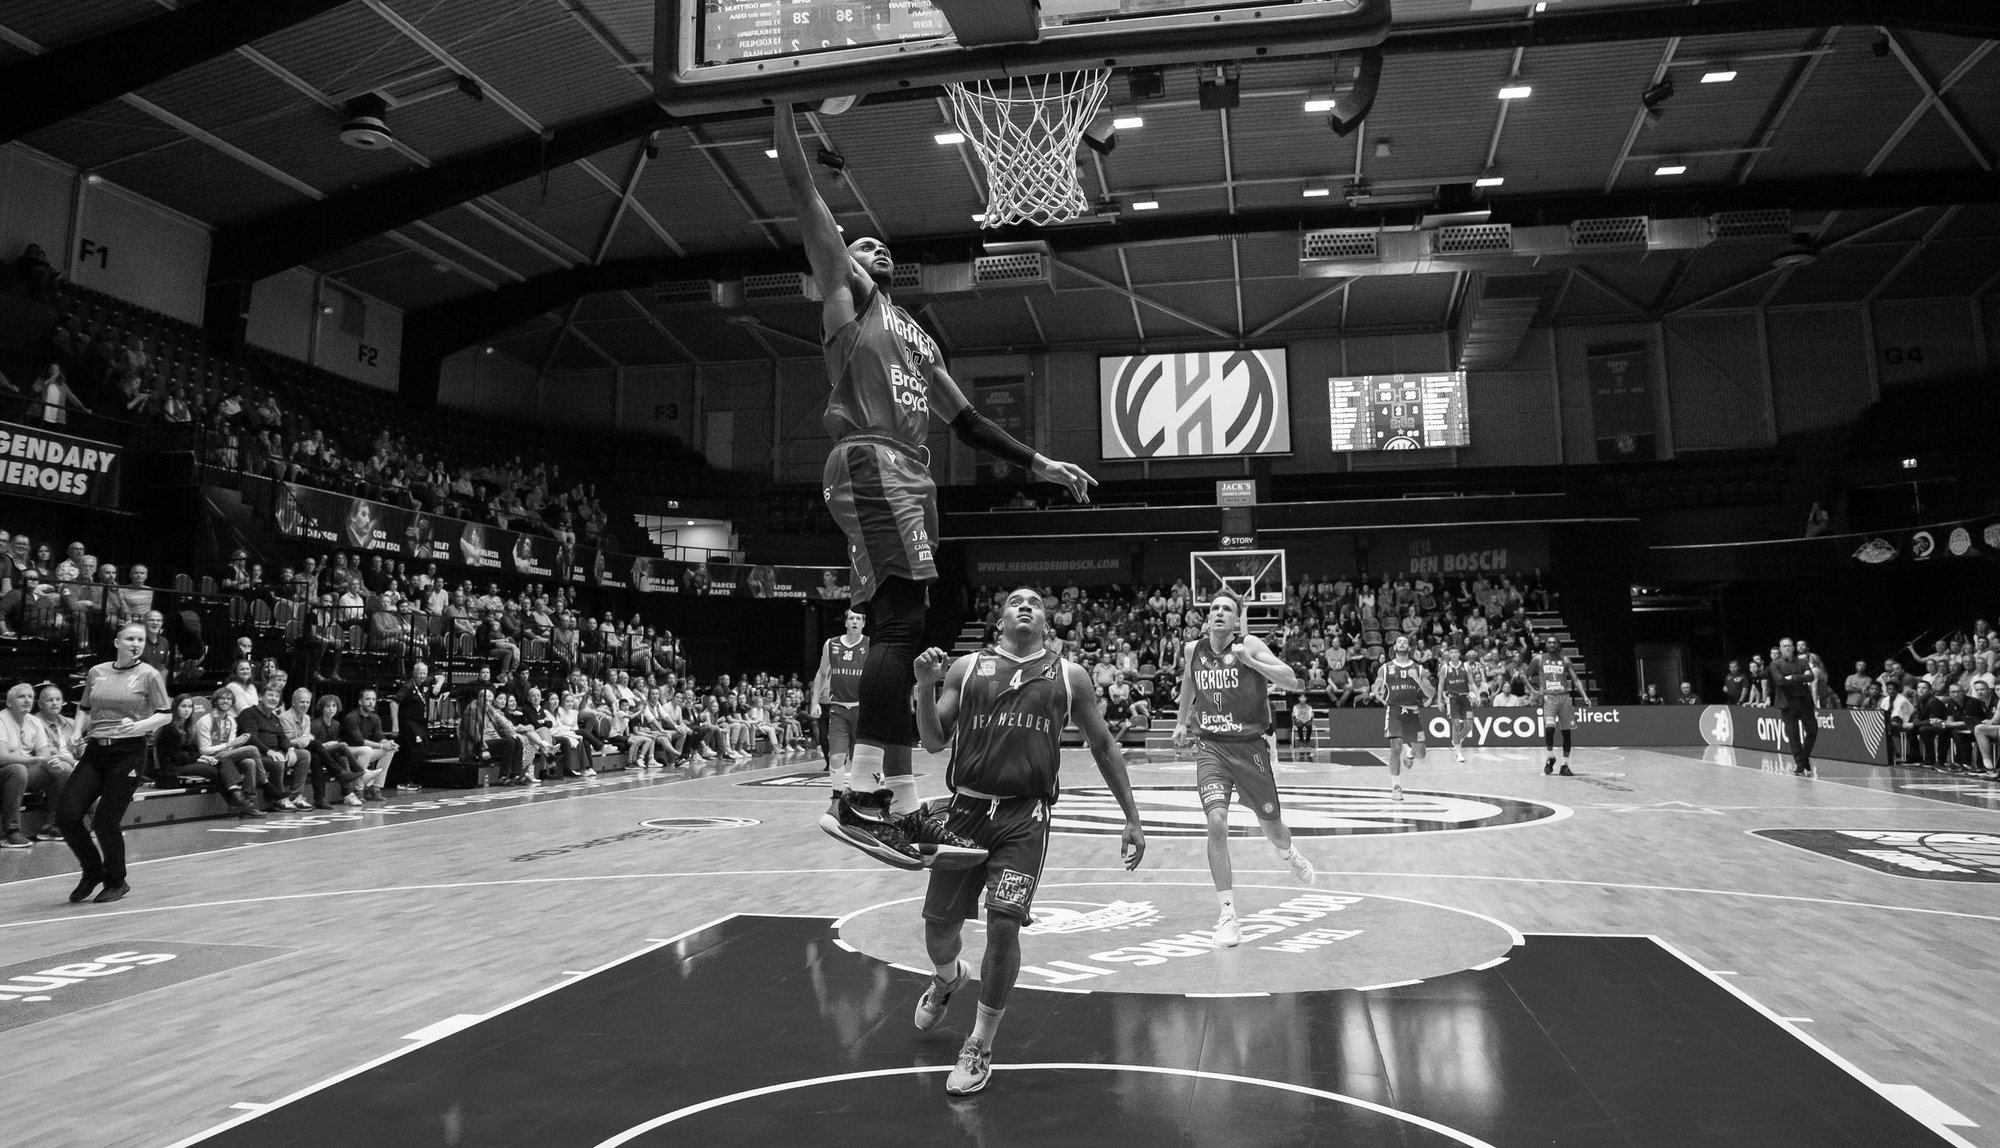 Dunk Chris-Ebou Ndow from basketball club Heroes Den Bosch